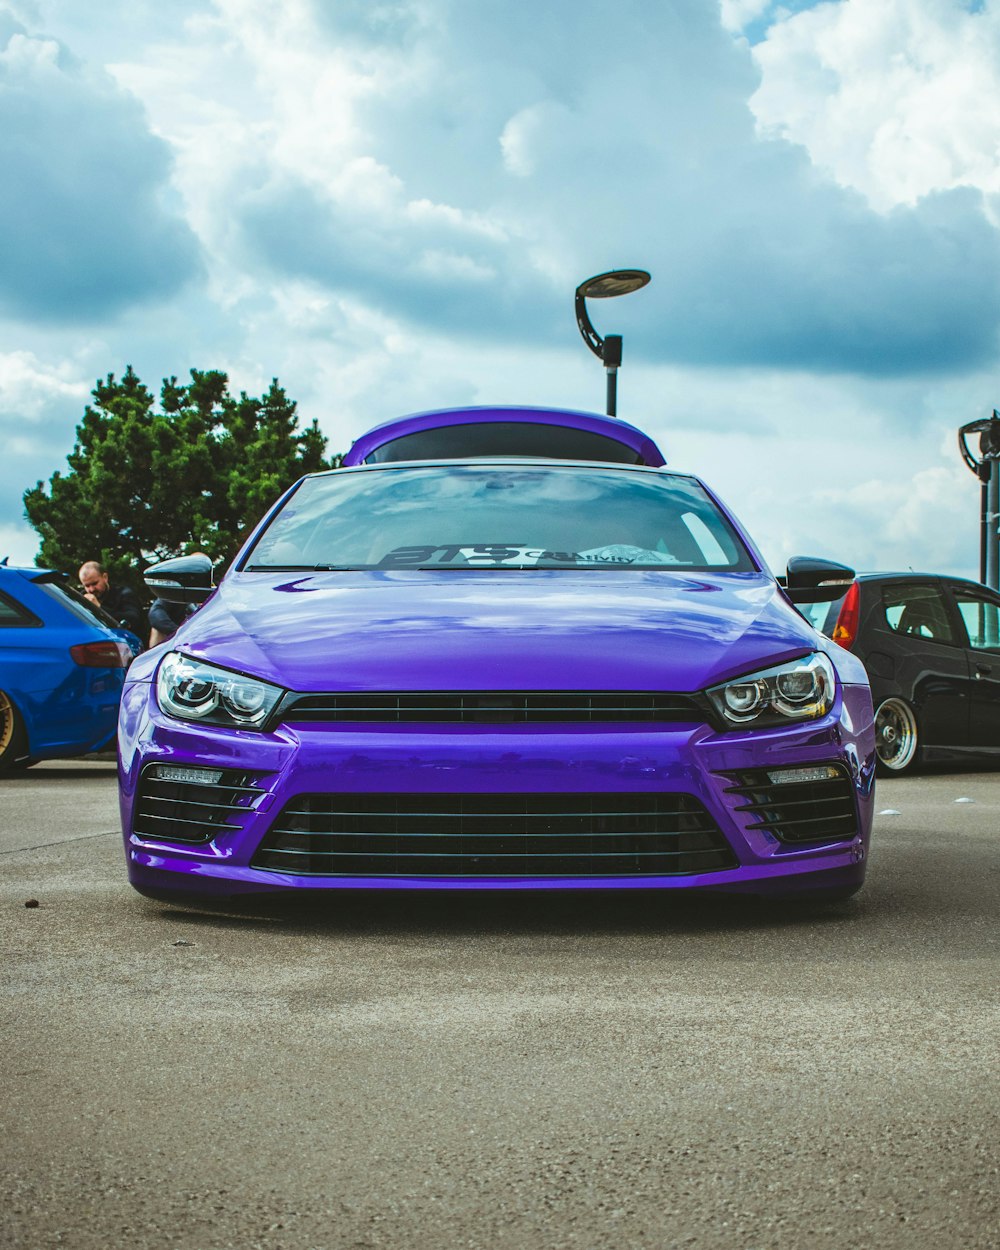 駐車場に駐車された紫色の車